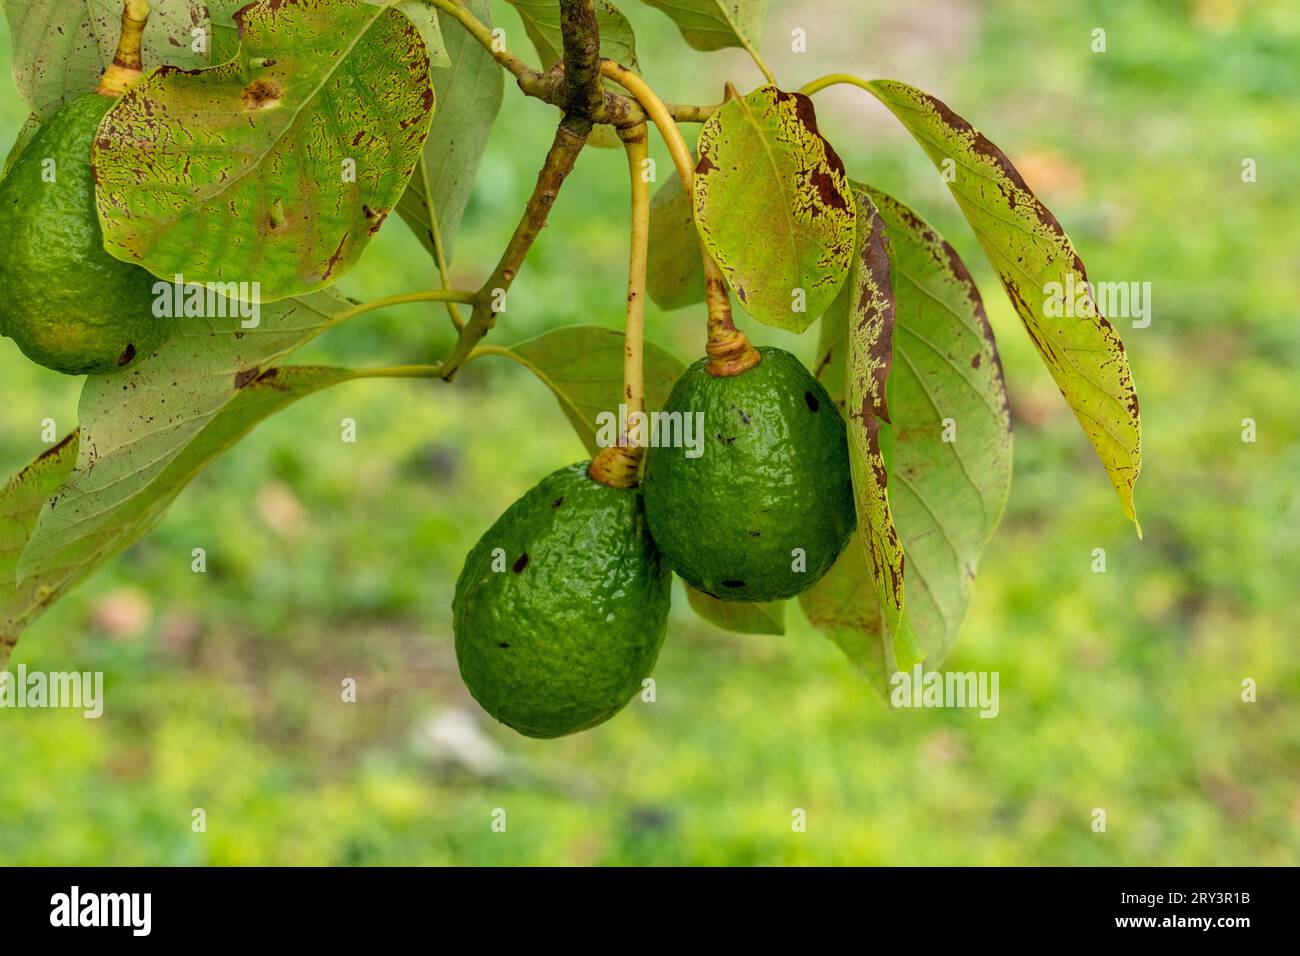 Fruit cultivant un arbre Avocado, Persea americana, dans la réserve archéologique de Caracol dans les hautes terres du Belize. Banque D'Images